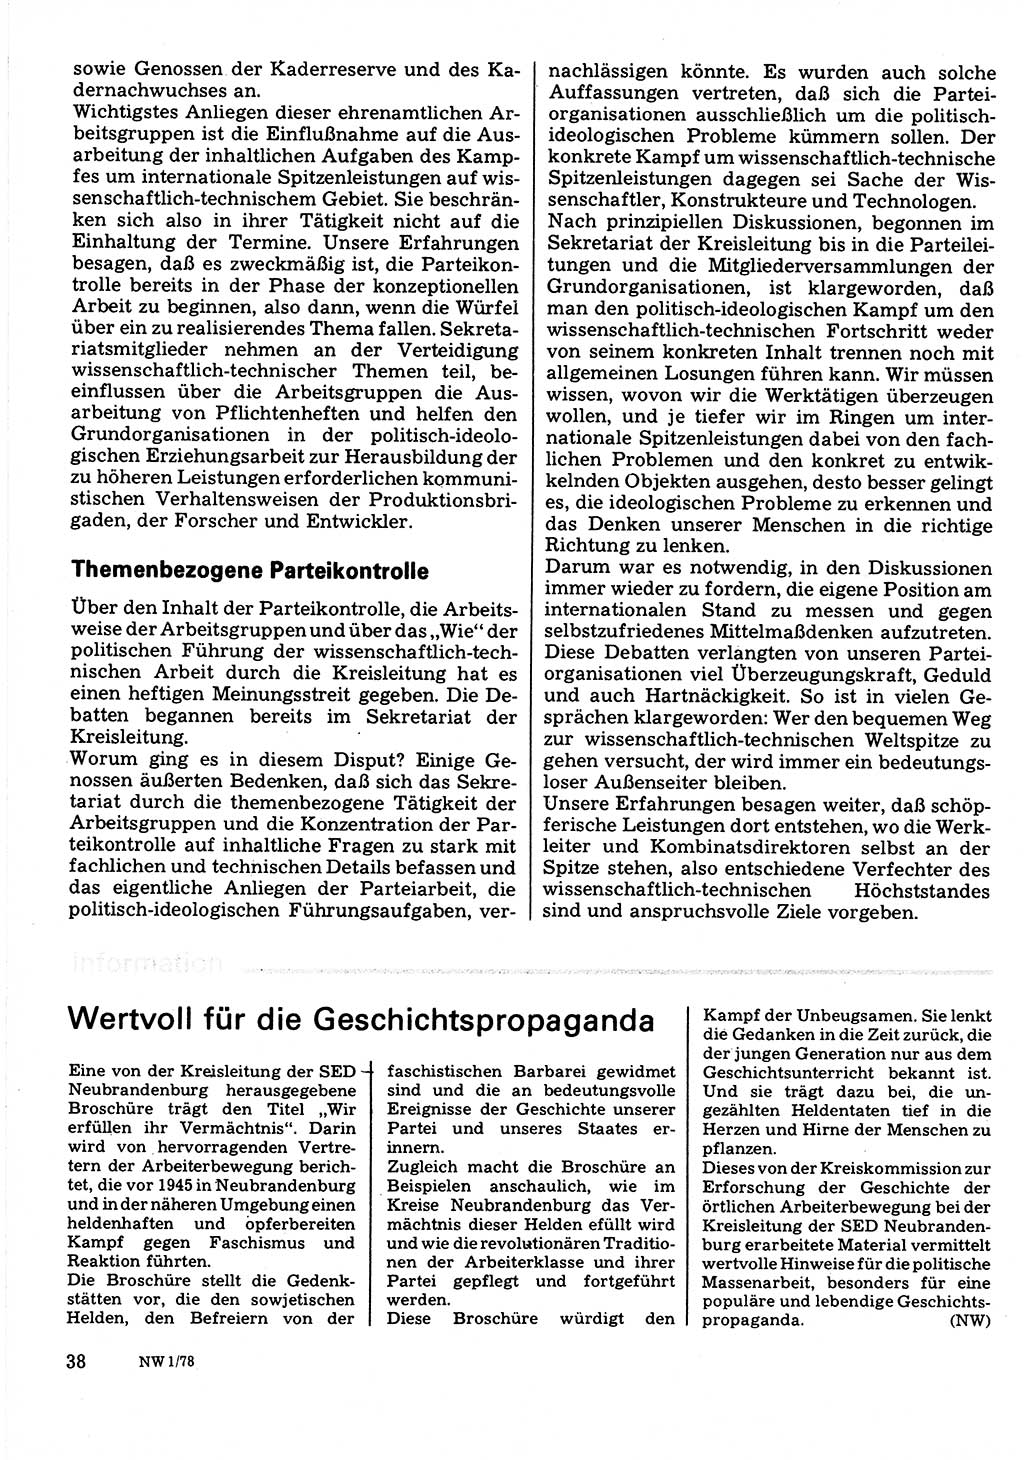 Neuer Weg (NW), Organ des Zentralkomitees (ZK) der SED (Sozialistische Einheitspartei Deutschlands) für Fragen des Parteilebens, 33. Jahrgang [Deutsche Demokratische Republik (DDR)] 1978, Seite 38 (NW ZK SED DDR 1978, S. 38)